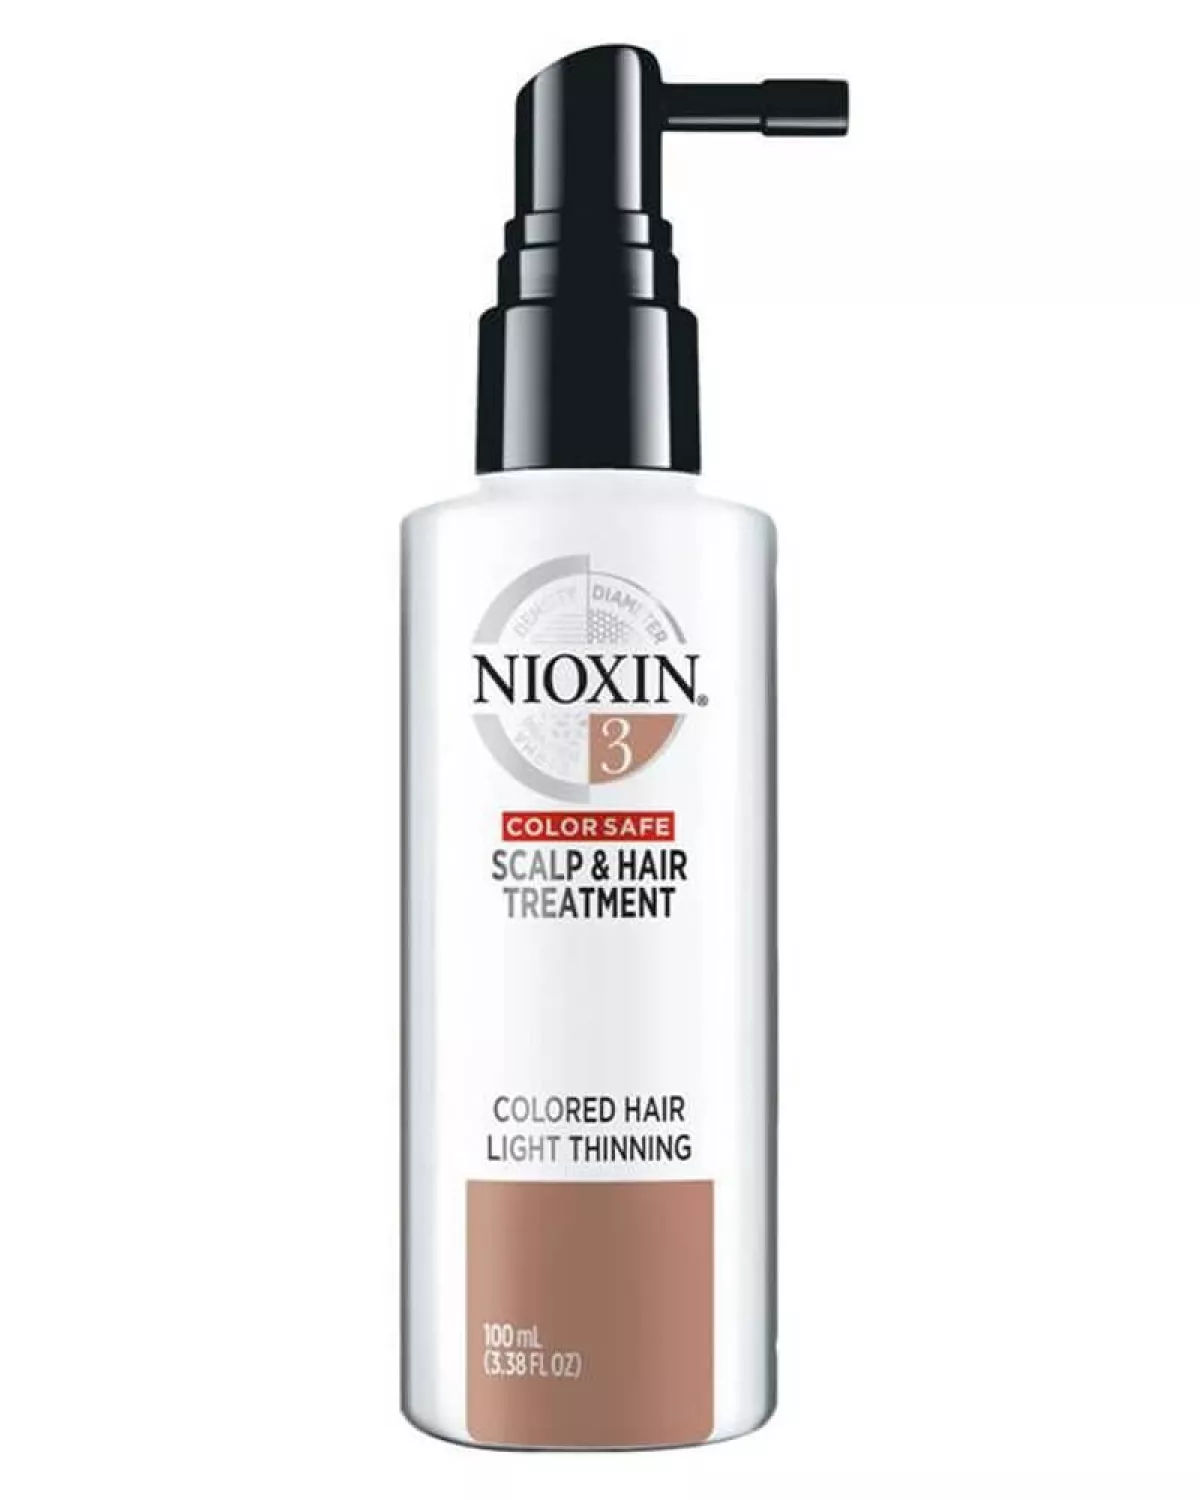 #1 - Nioxin 3 Scalp & Hair Treatment 100 ml